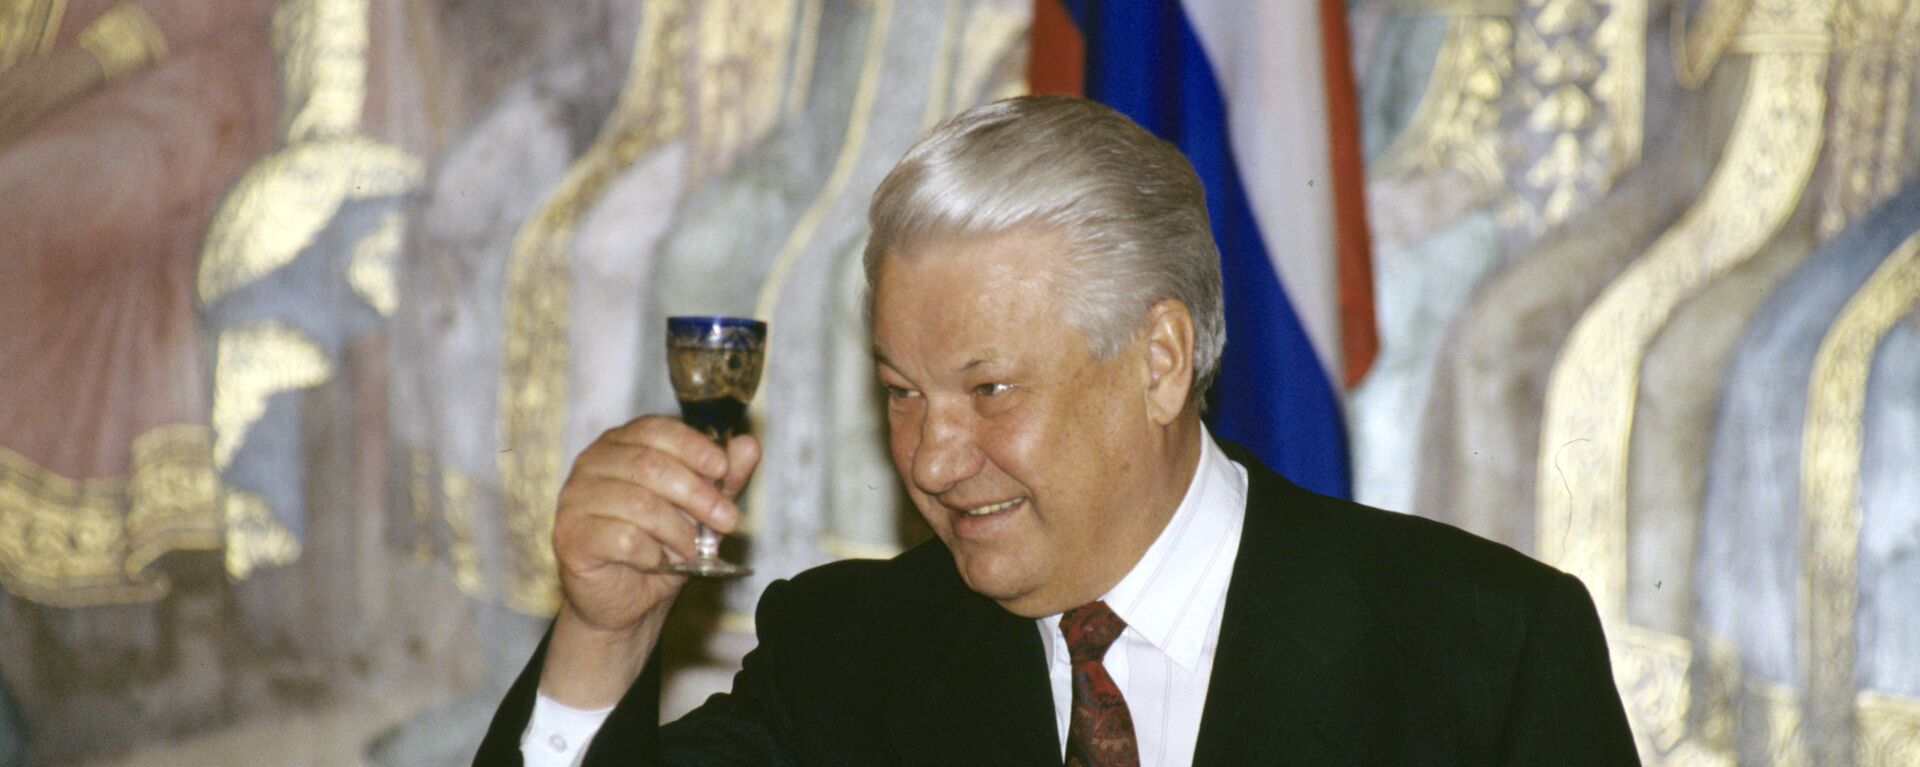 Бивши председник Руске Федерације Борис Јељцин са чашицом вотке - Sputnik Србија, 1920, 09.08.2019